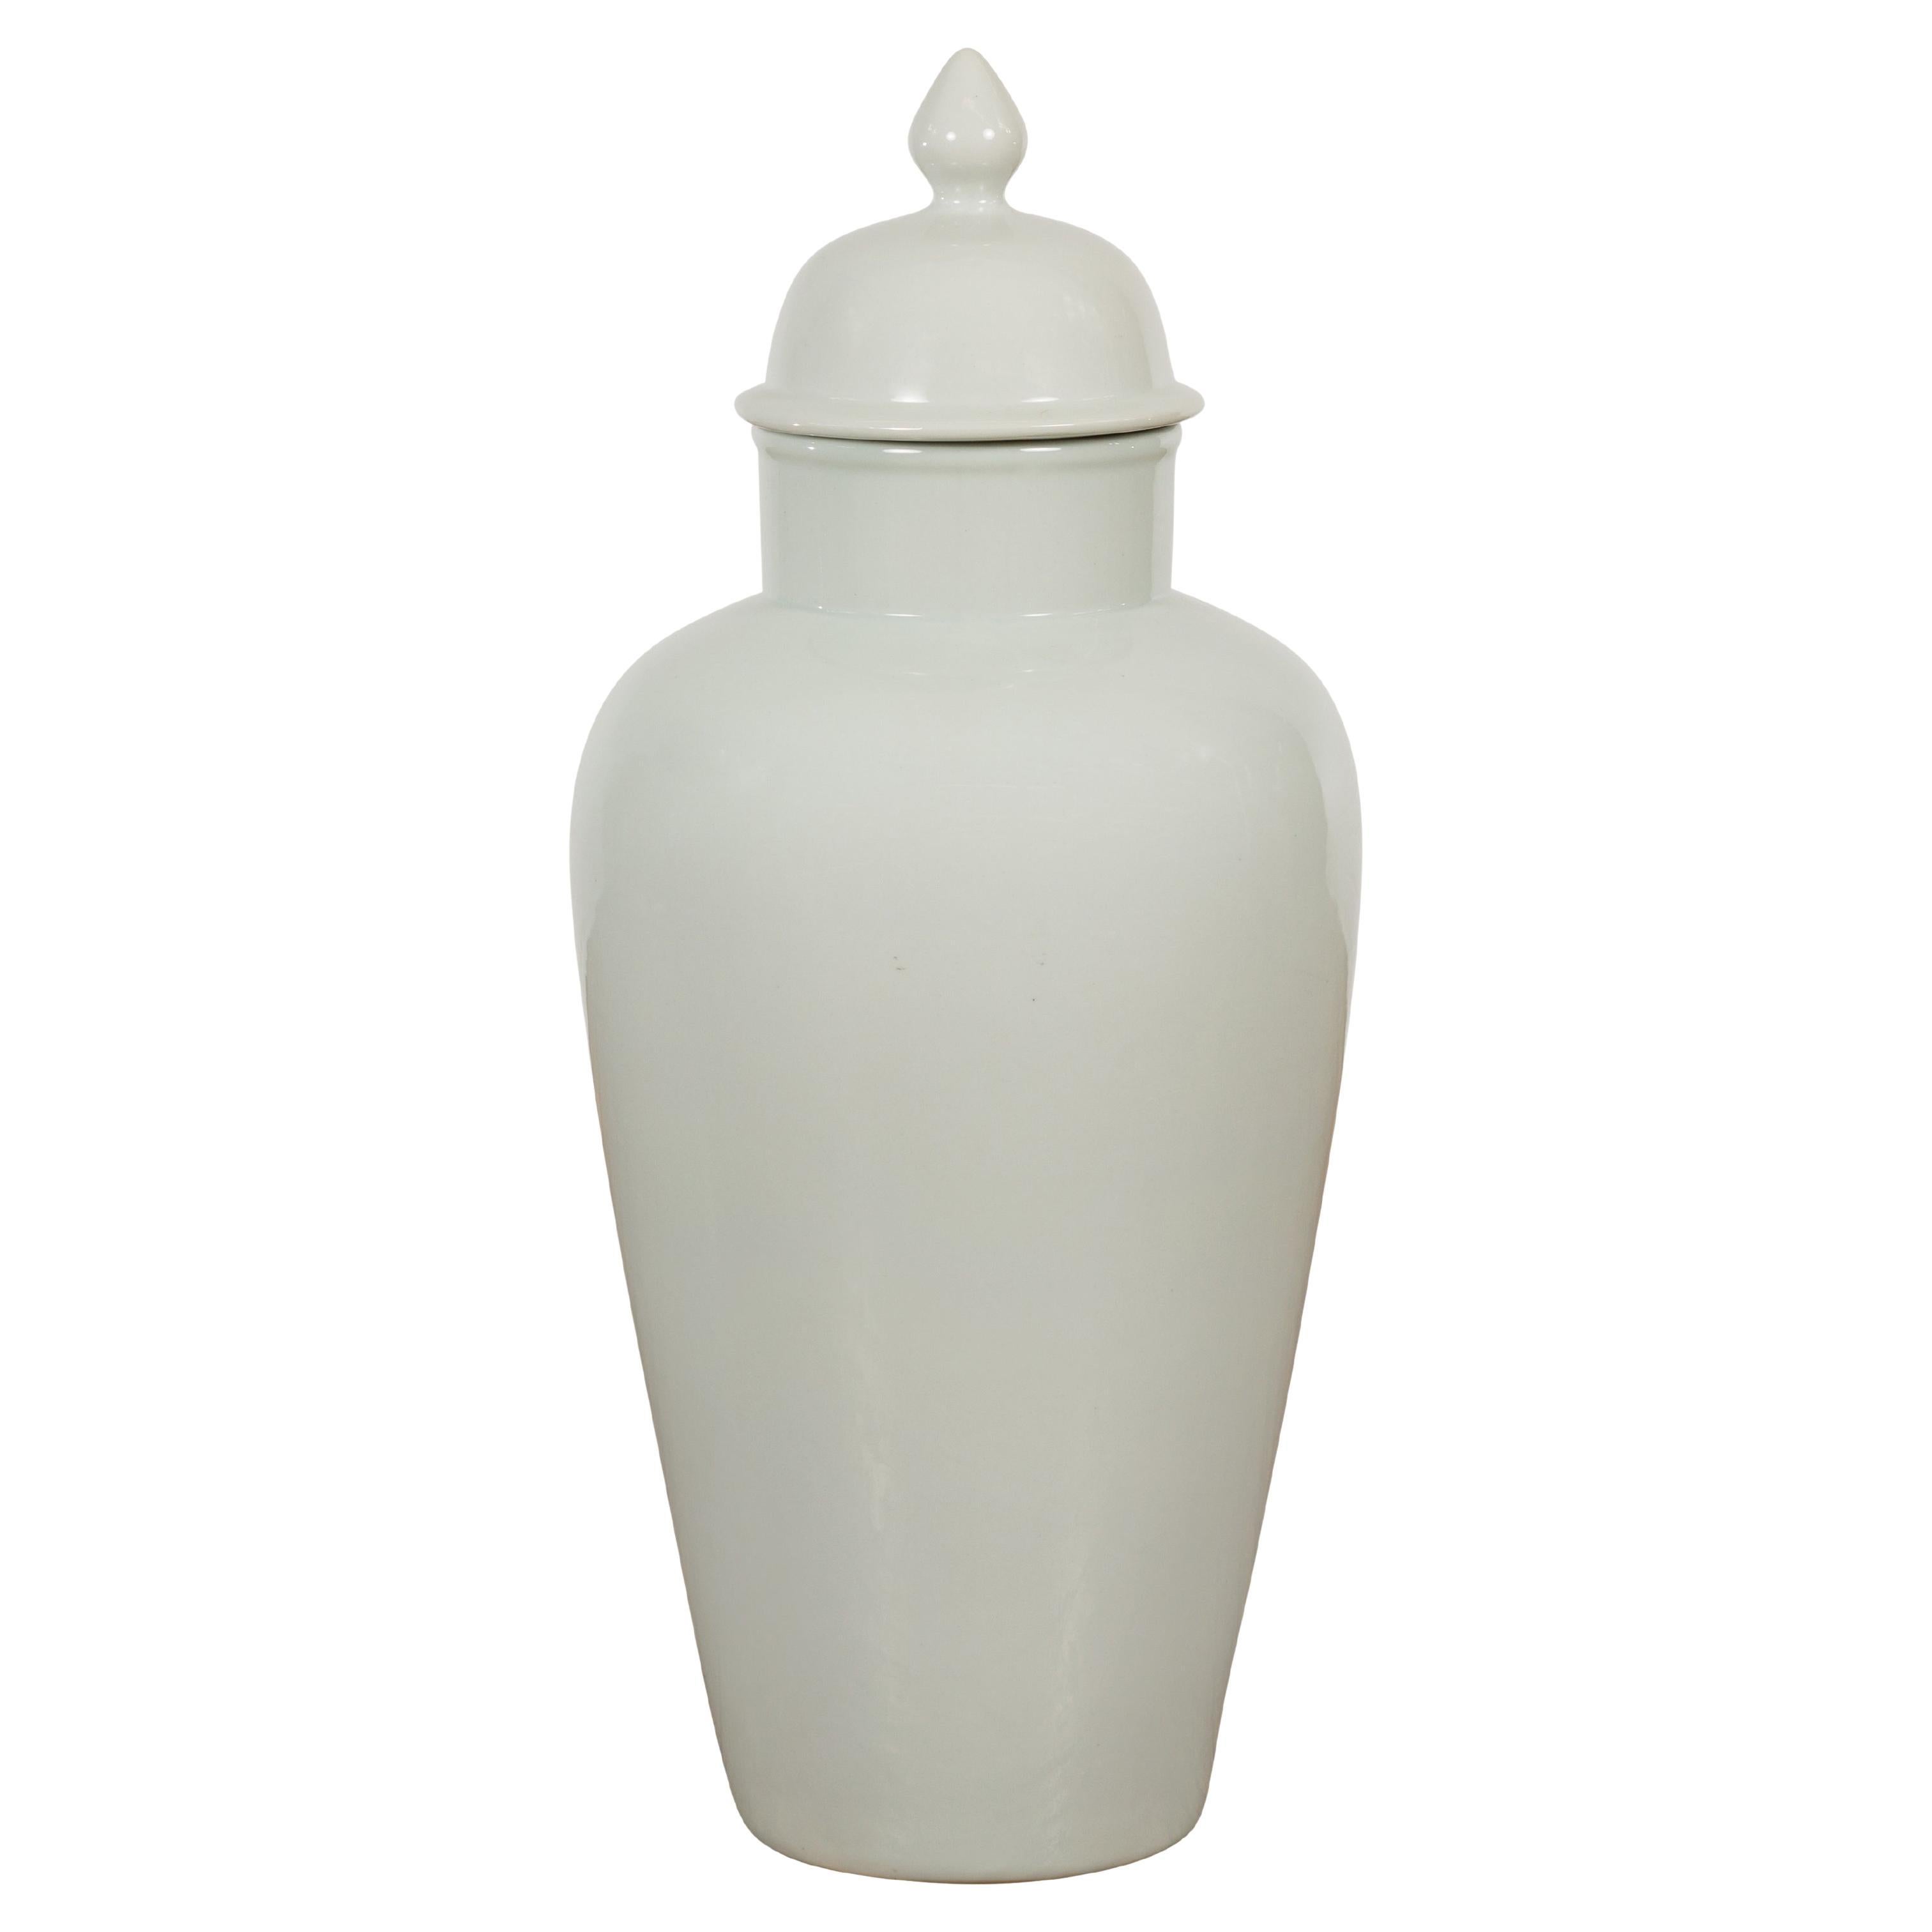 Vase Vintage en porcelaine blanche avec couvercle